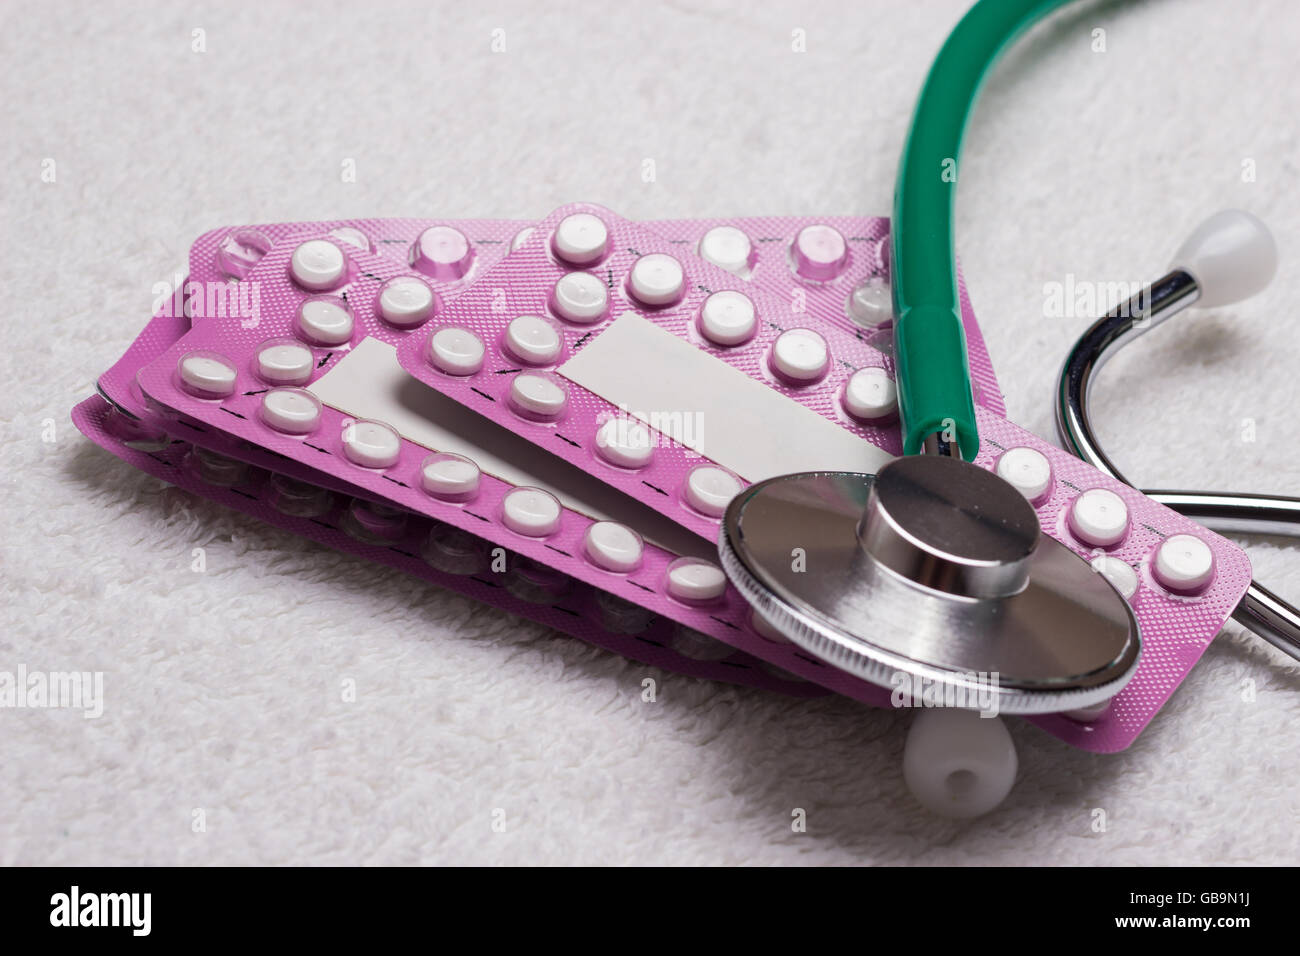 Medicina salud métodos anticonceptivos y de control de la natalidad. Las píldoras anticonceptivas orales, las ampollas con tabletas hormonales Foto de stock